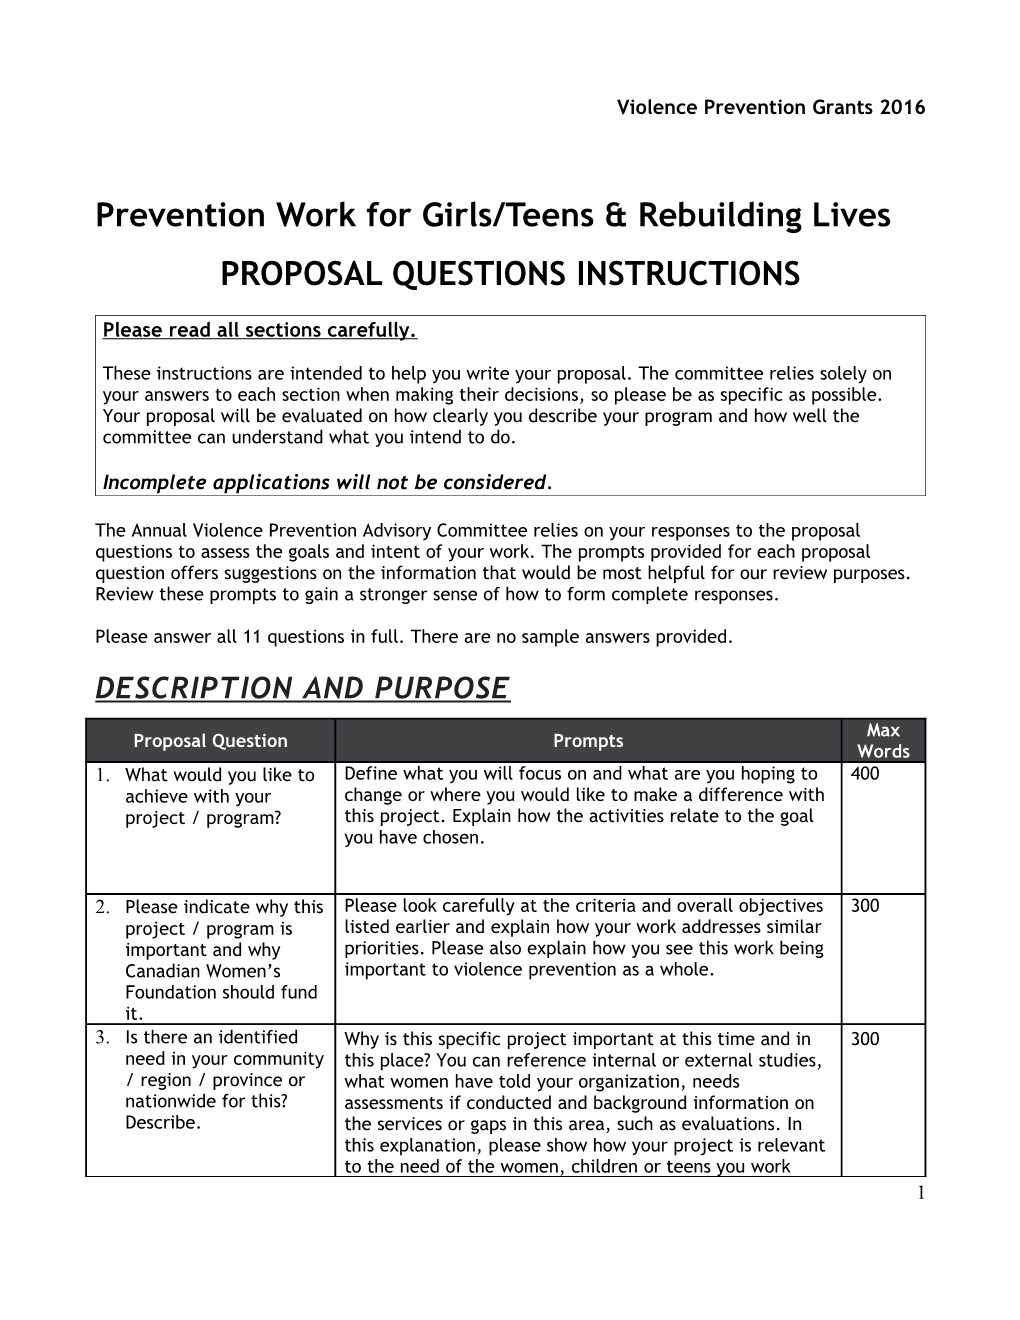 Prevention Work for Girls/Teensrebuilding Lives